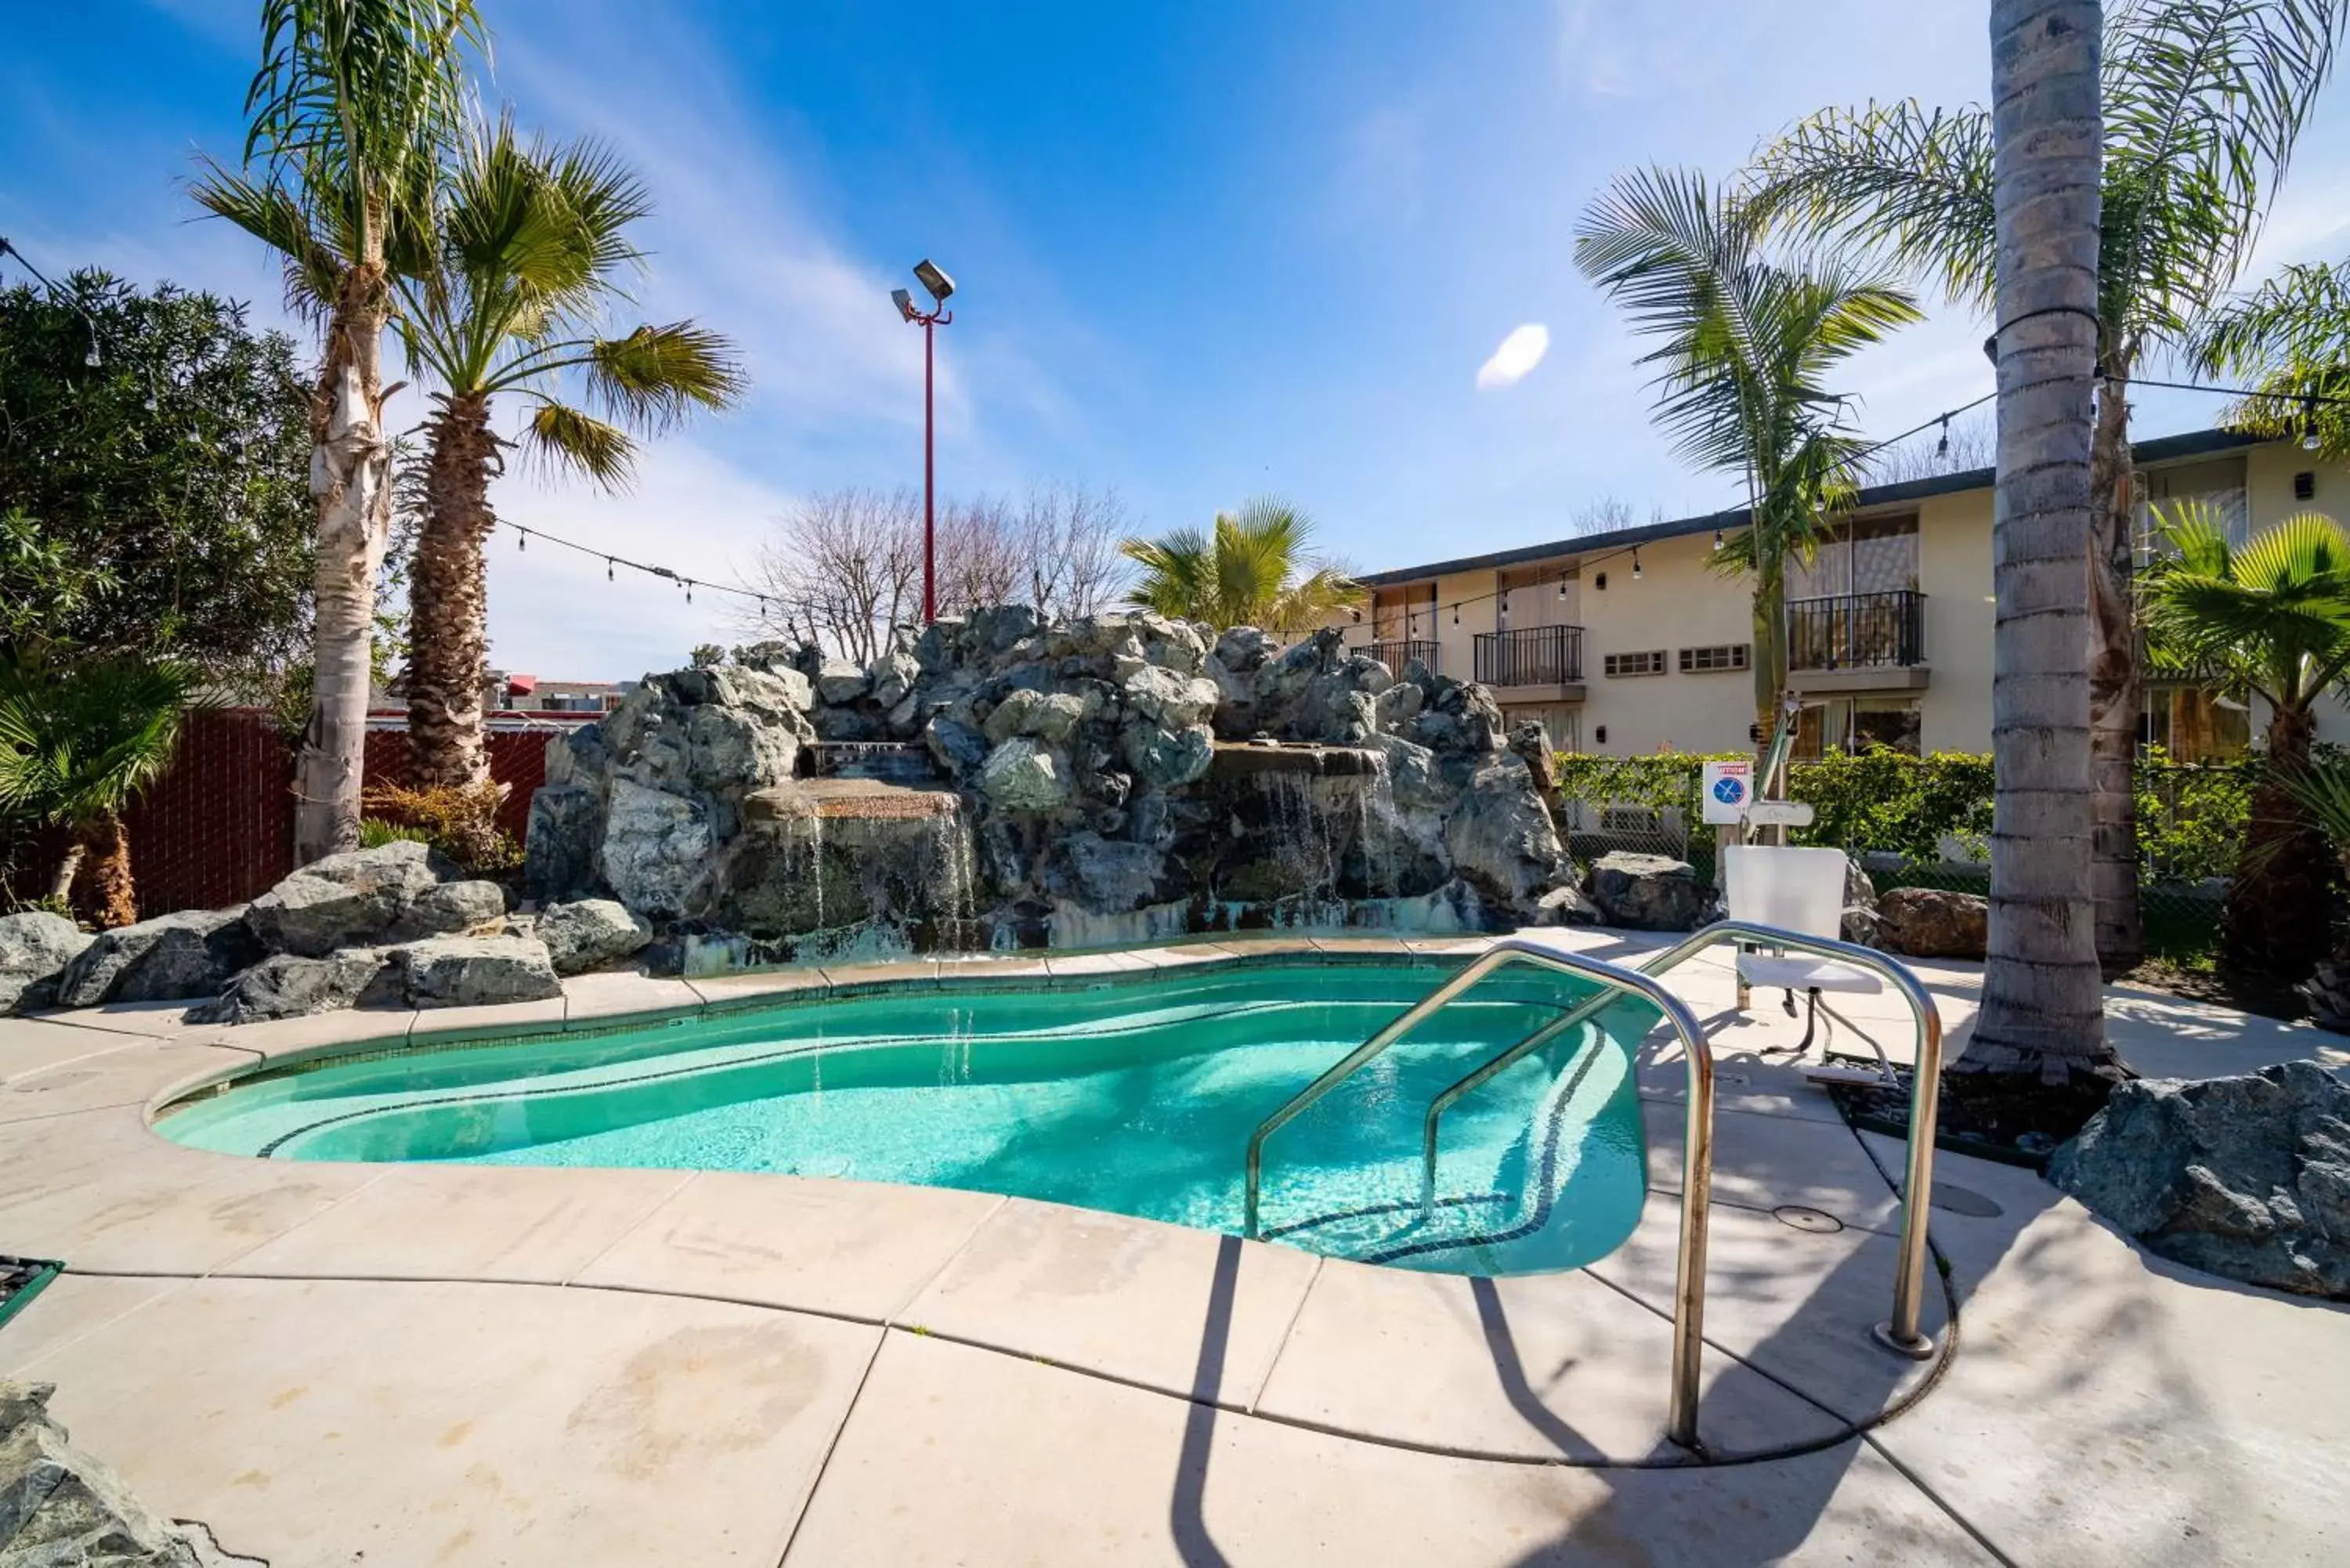 Swimming Pool in Hotel Calle Joaquin - San Luis Obispo